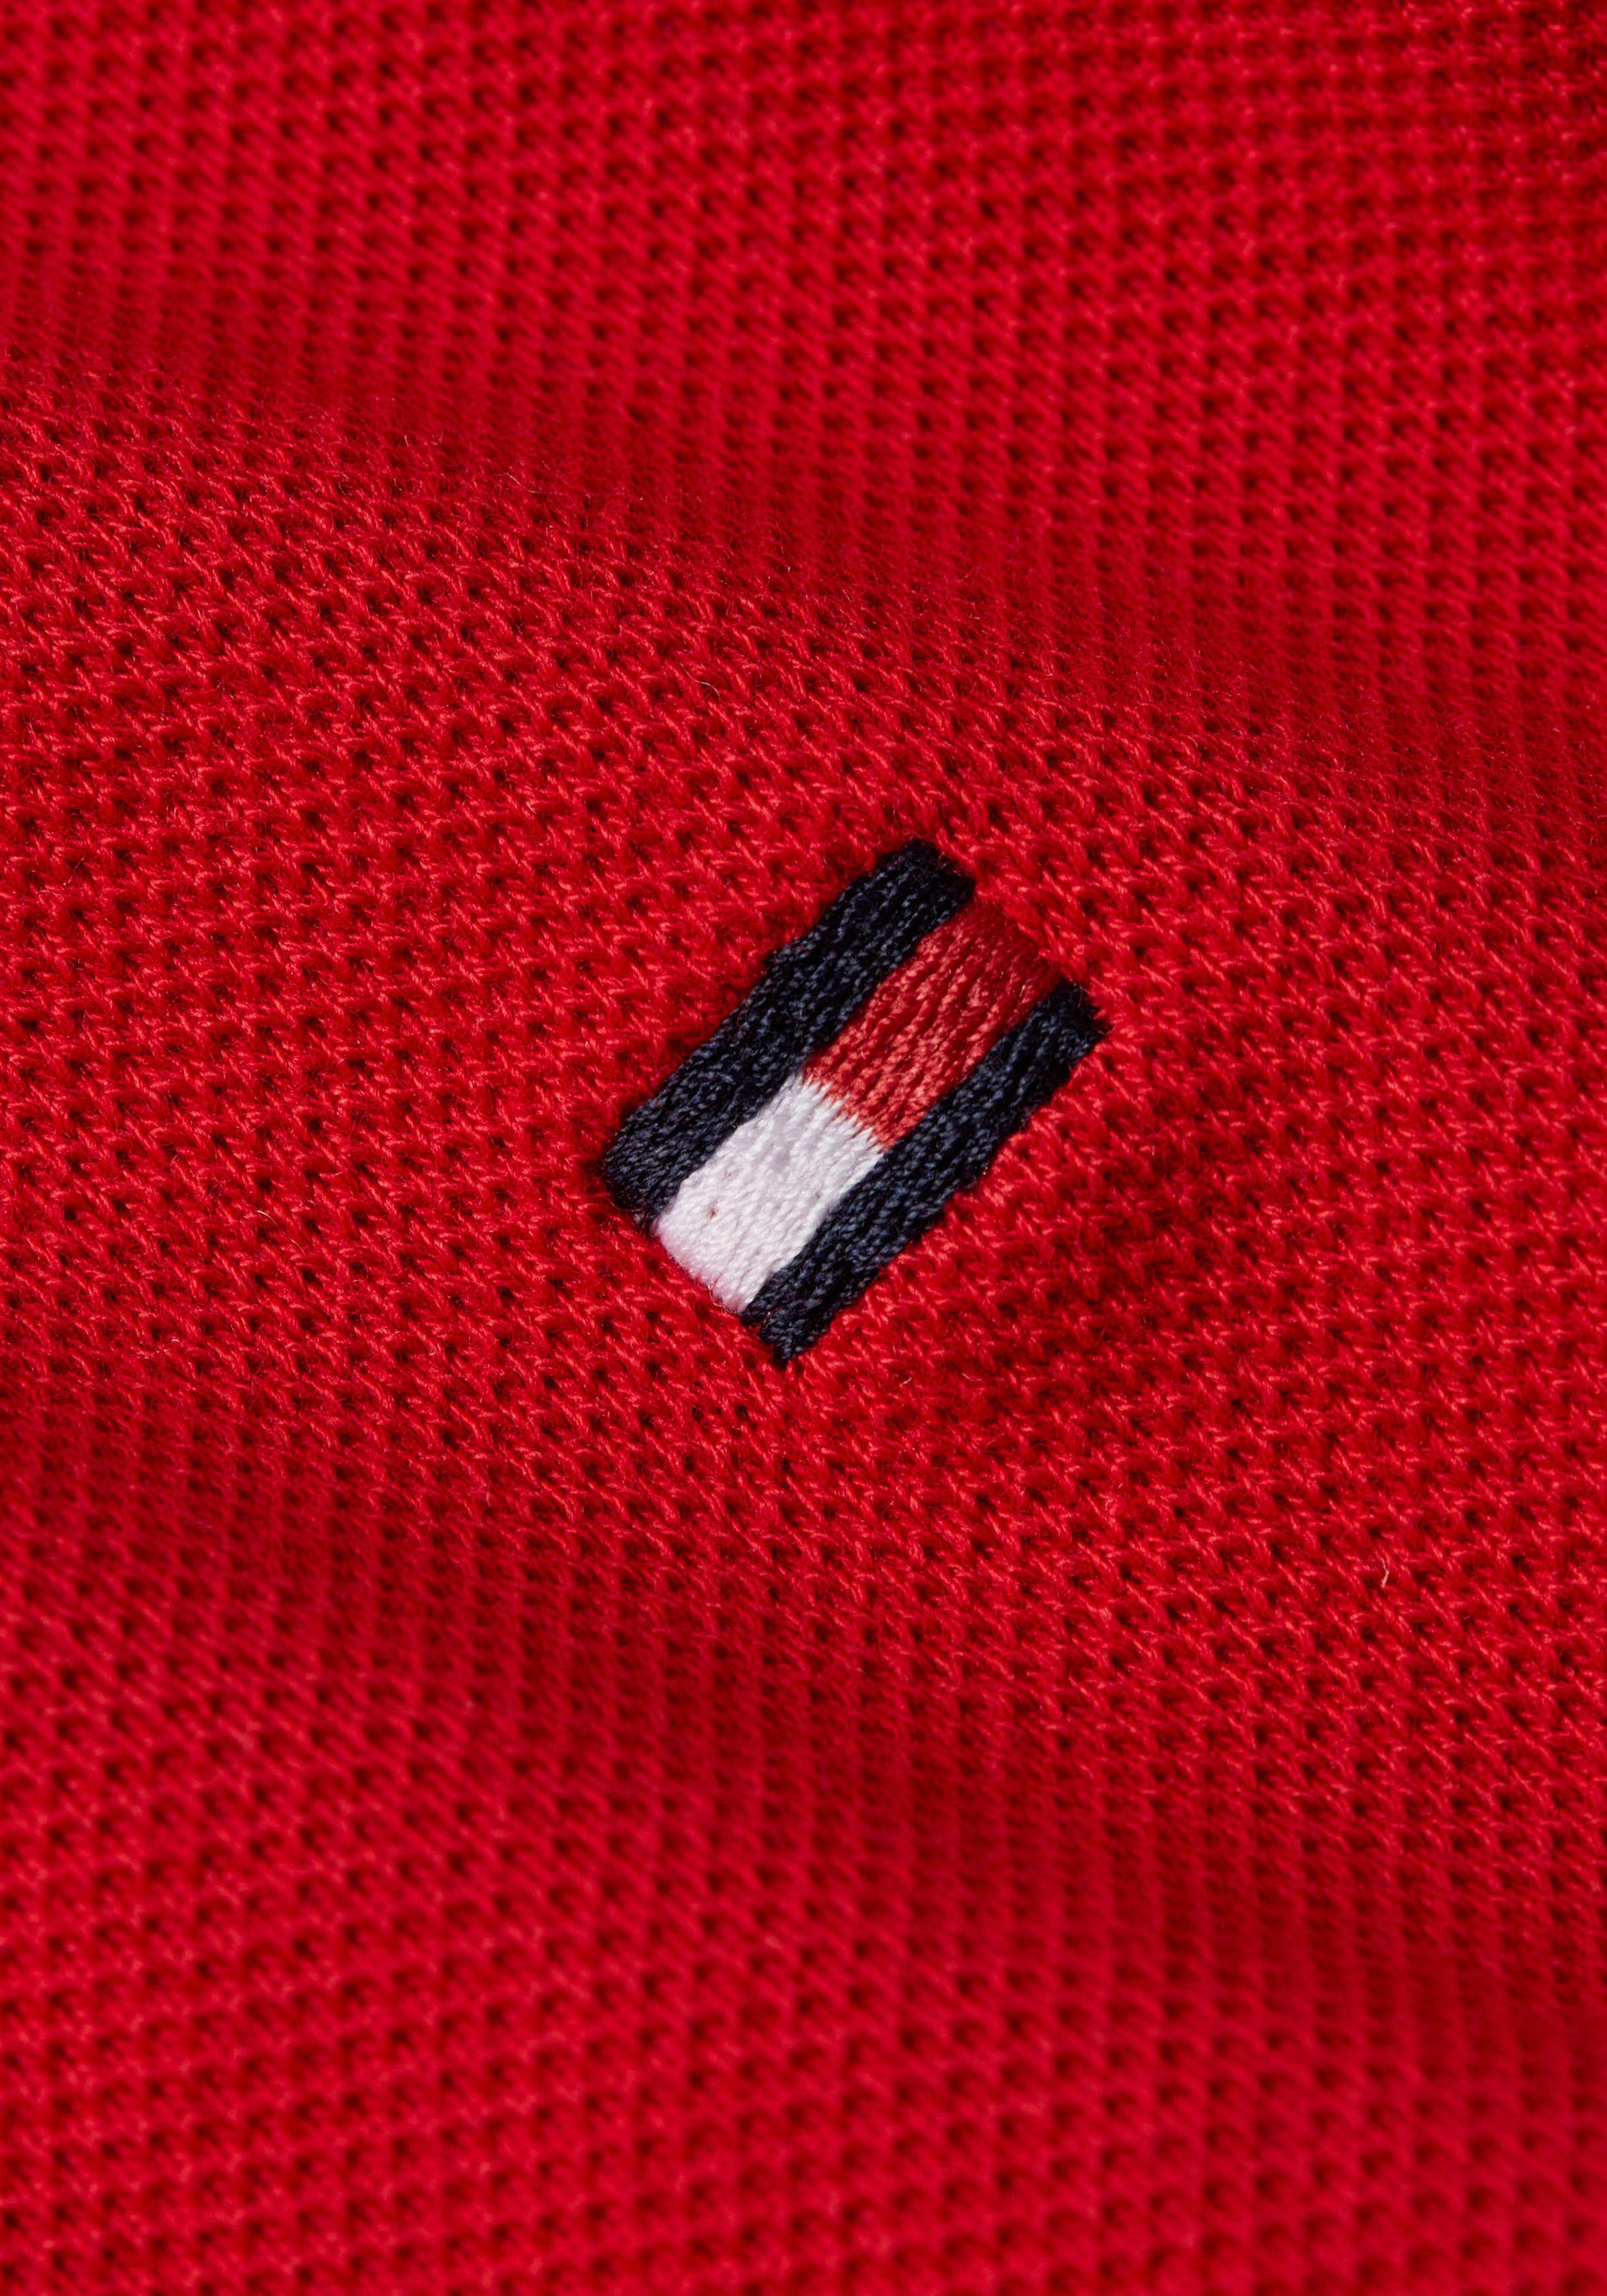 TH-Farben an Tommy mit TIPPED Poloshirt SLIM und Kragen Primary Red RWB 1985 Hilfiger Ärmel POLO